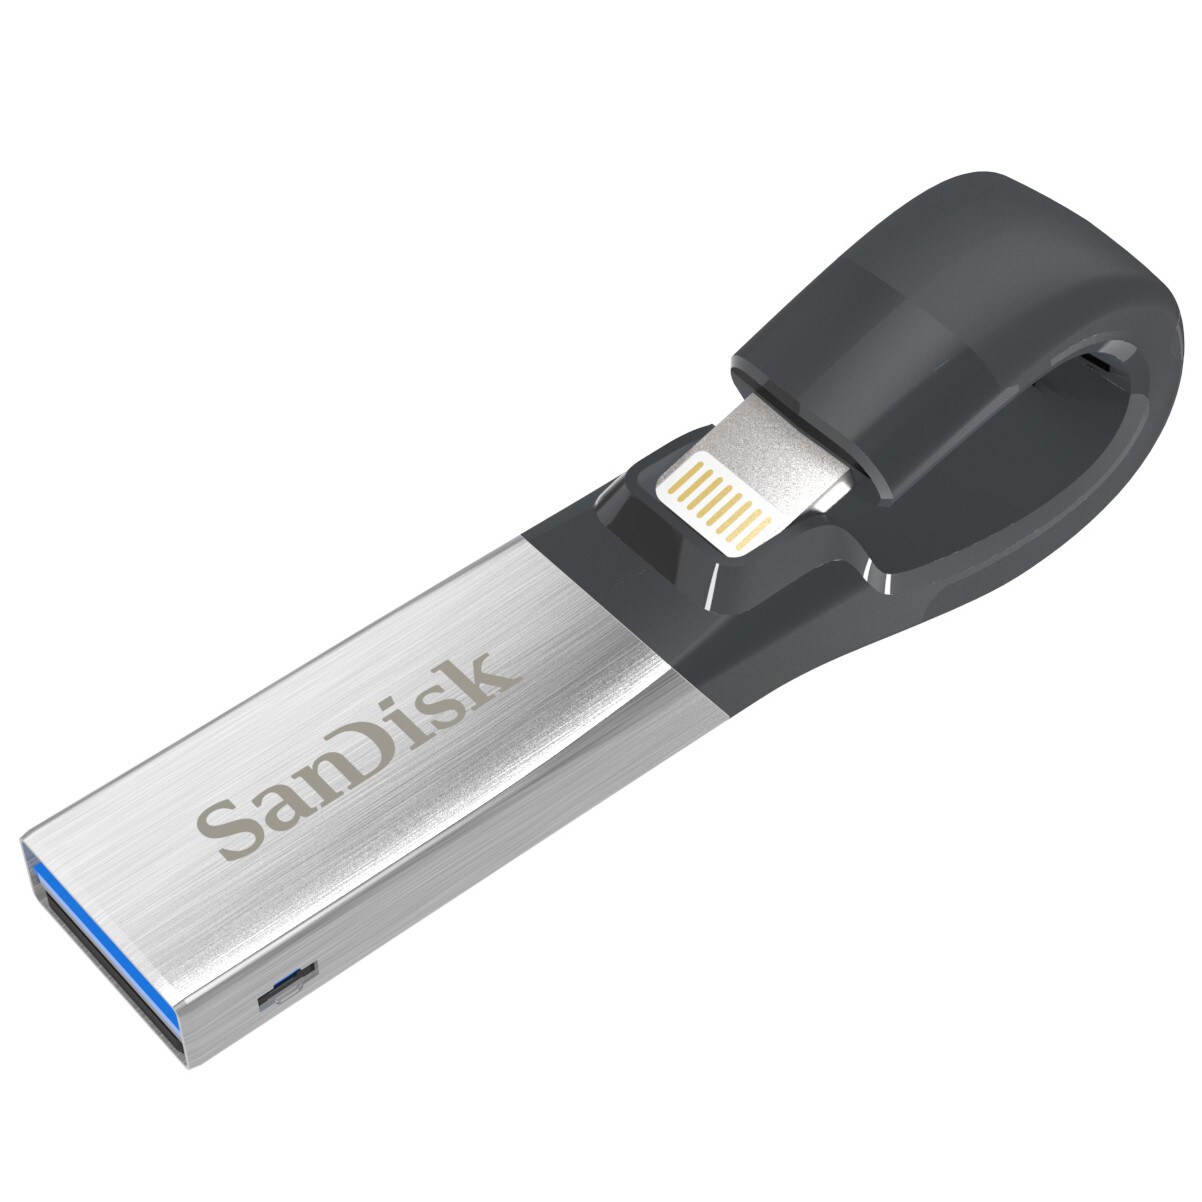 SanDisk iXpand 2 lagringsenhed til iPad/iPhone - 16 GB | Elgiganten